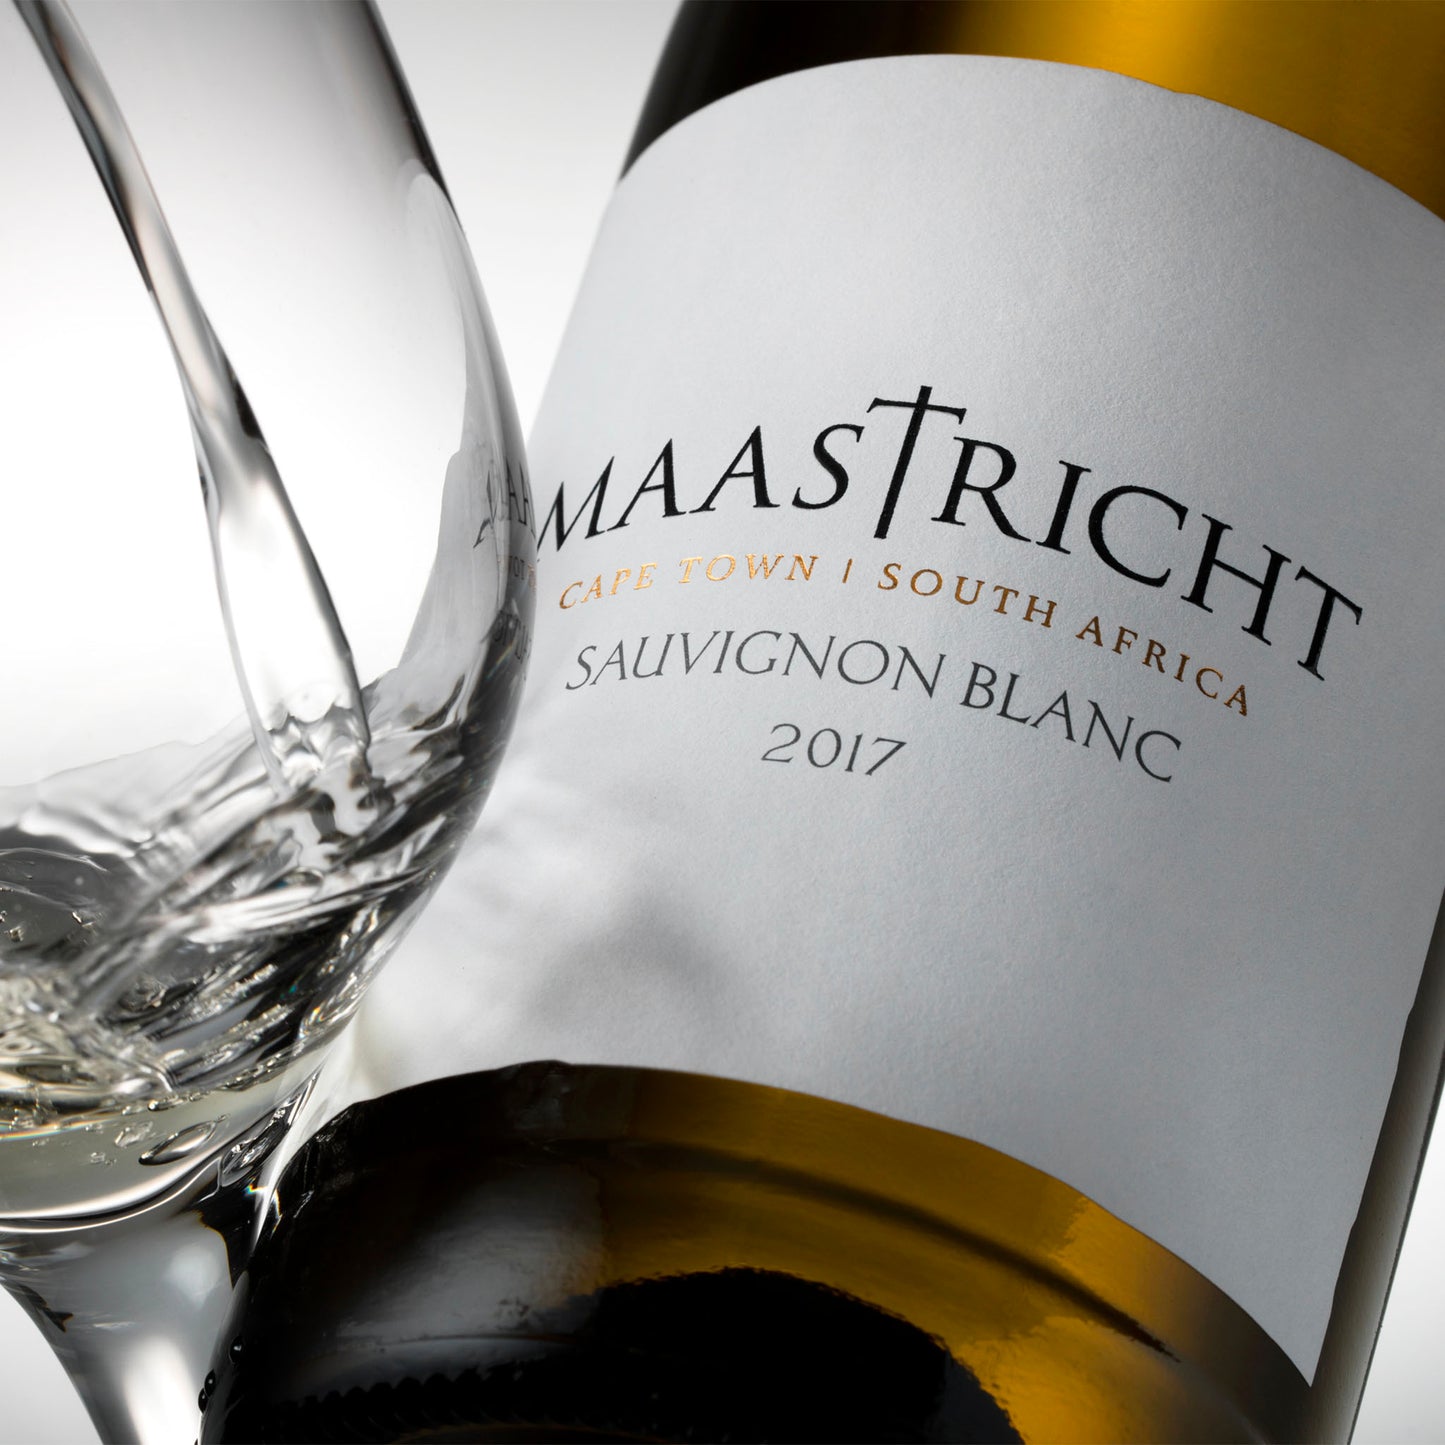 Maastricht Sauvignon Blanc